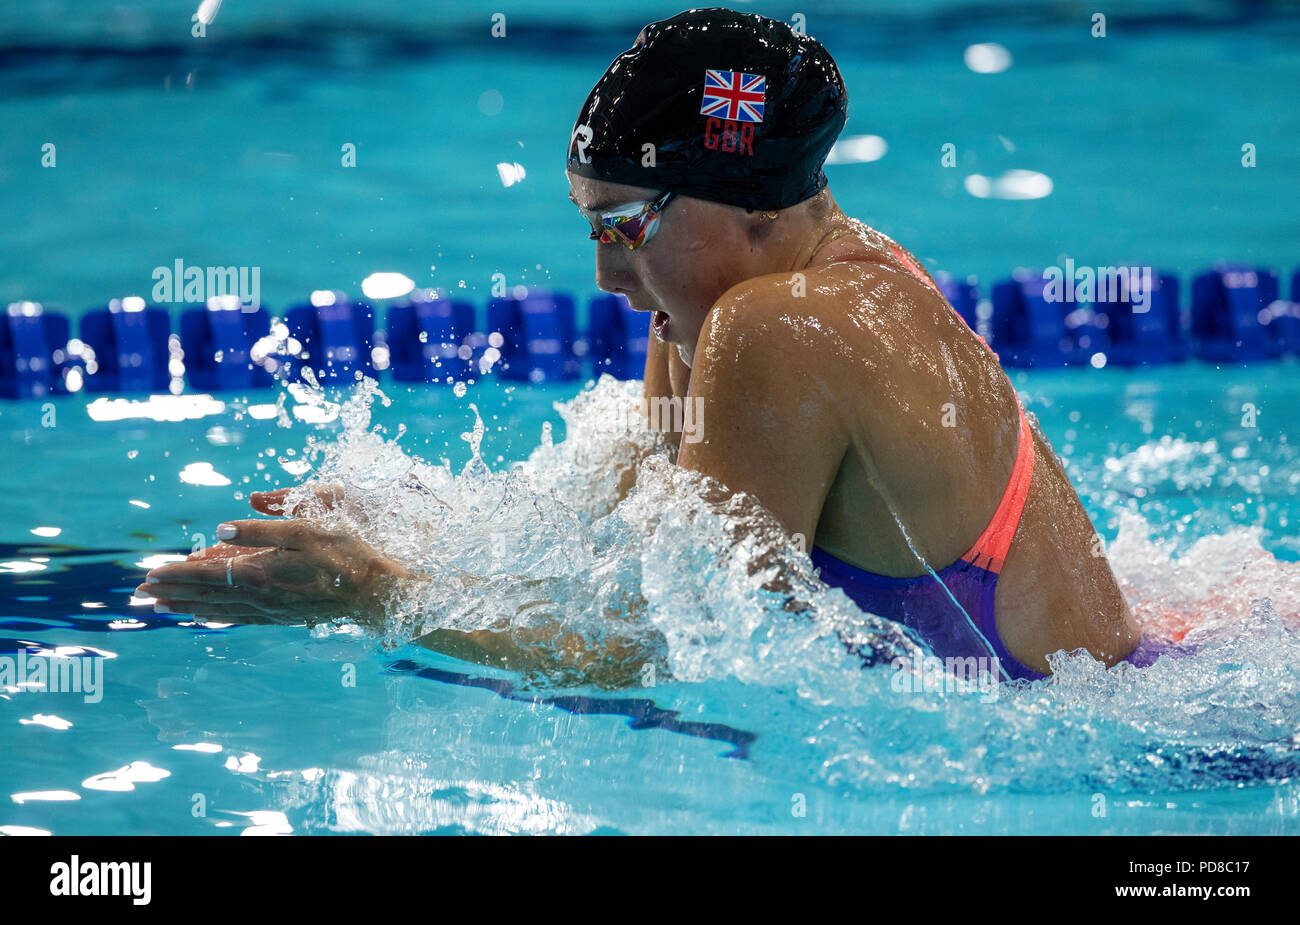 7 agosto 2018, Tollcross International centro nuoto, Glasgow, Scozia; Glasgow 2018 Unione Nuoto Campionati; Chloe Tutton (GBR) che è stato squalificato dalla 200m Finale a rana Foto Stock